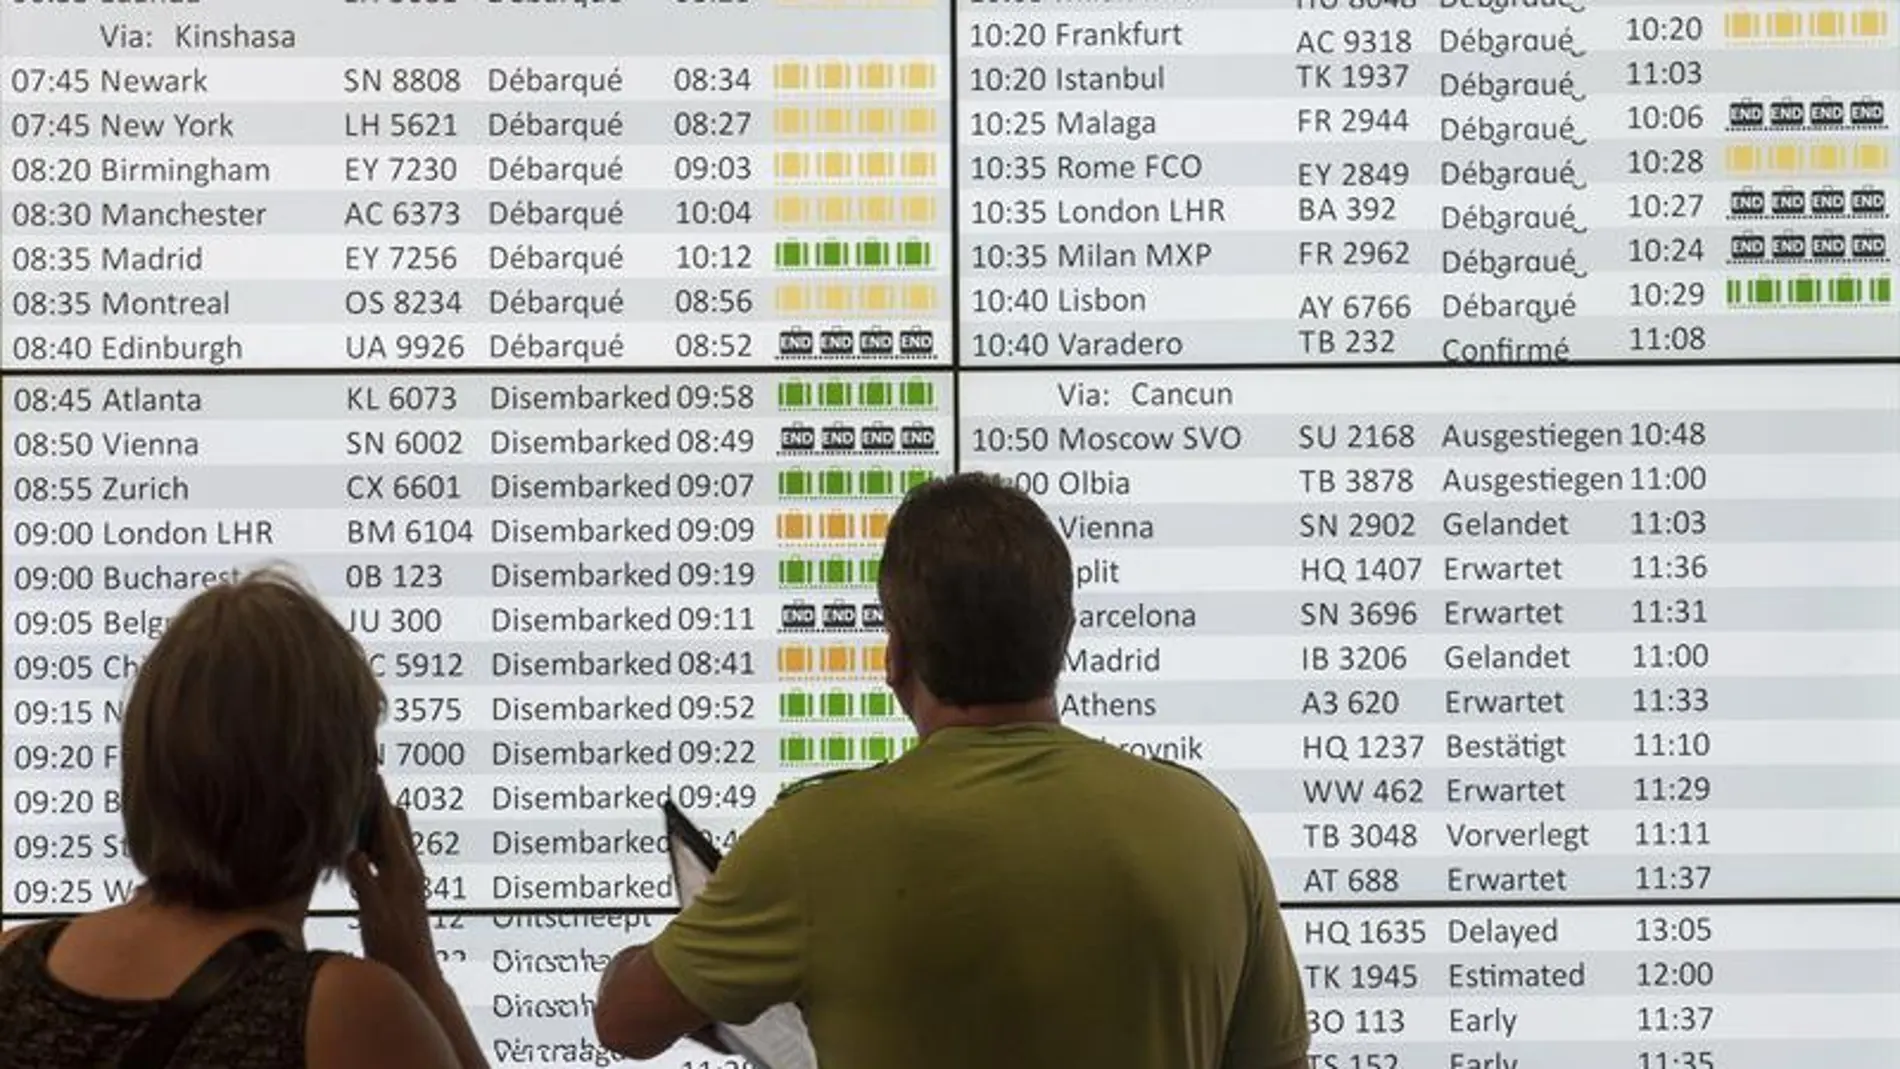 Dos viajeros observan el panel de salidas del aeropuerto de Bruselas